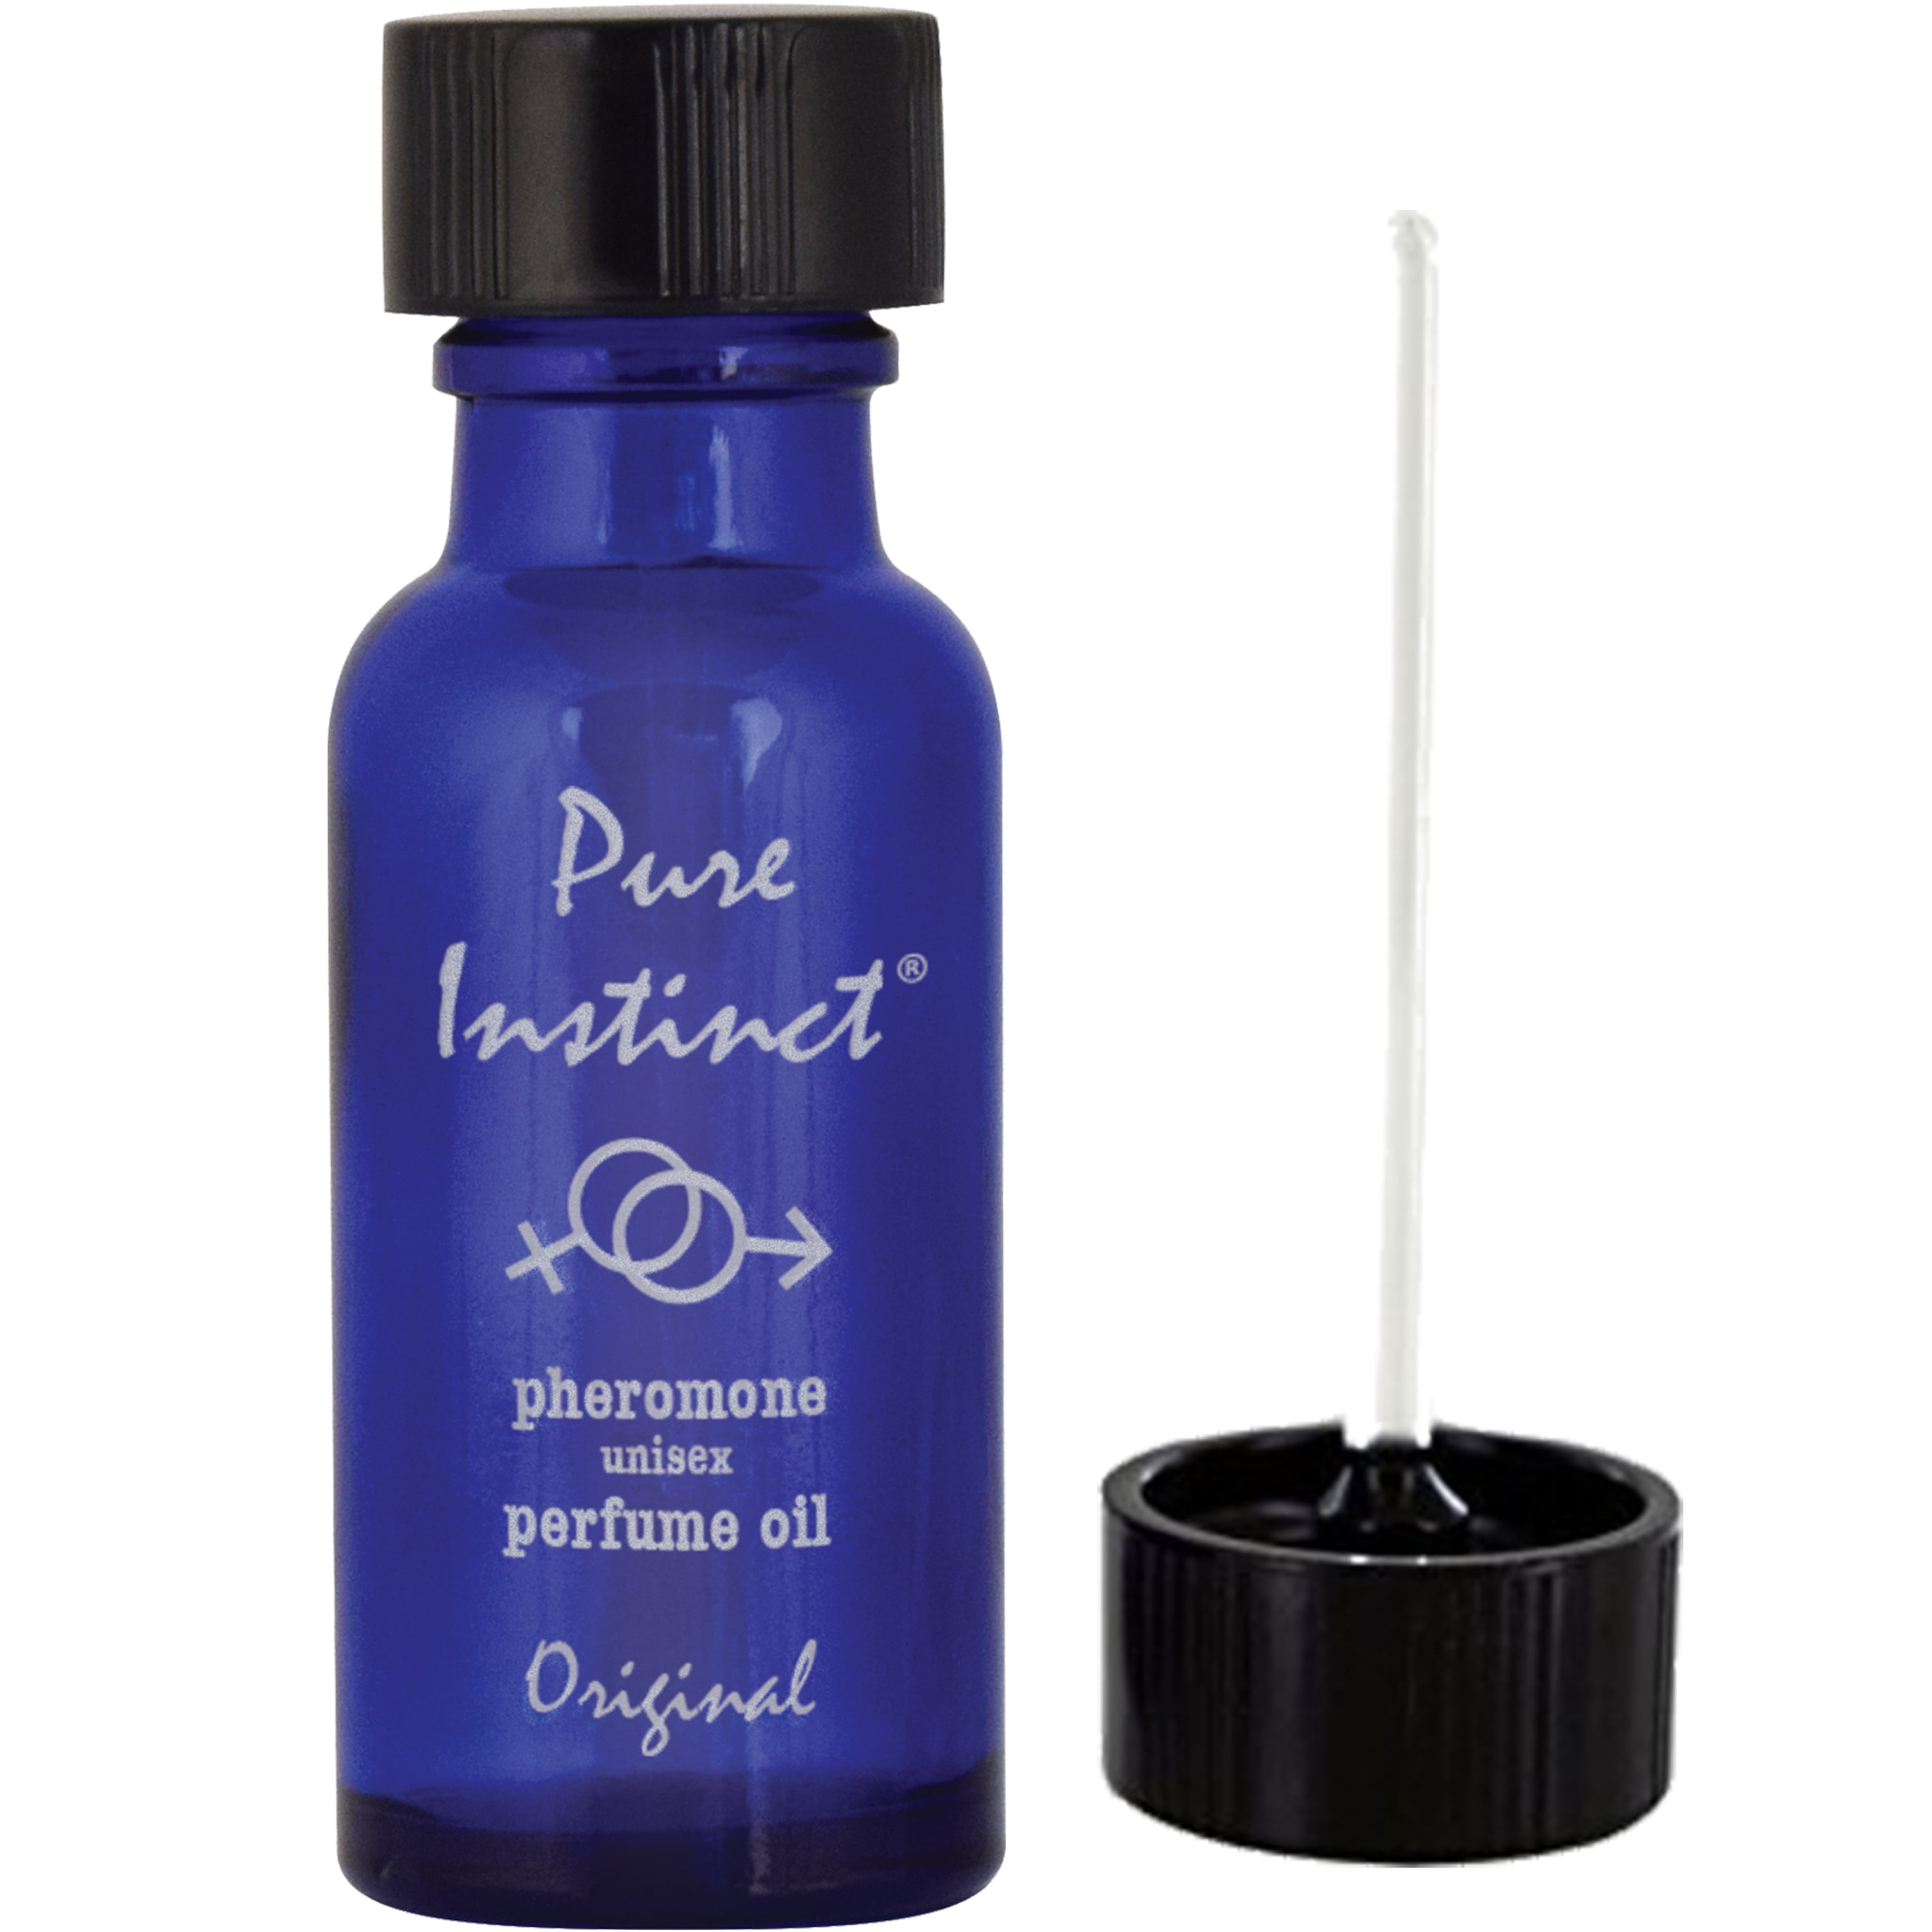 Pure Instinct - The Original Pheromone Infused Essential Oil Perfume C –  IntiMD